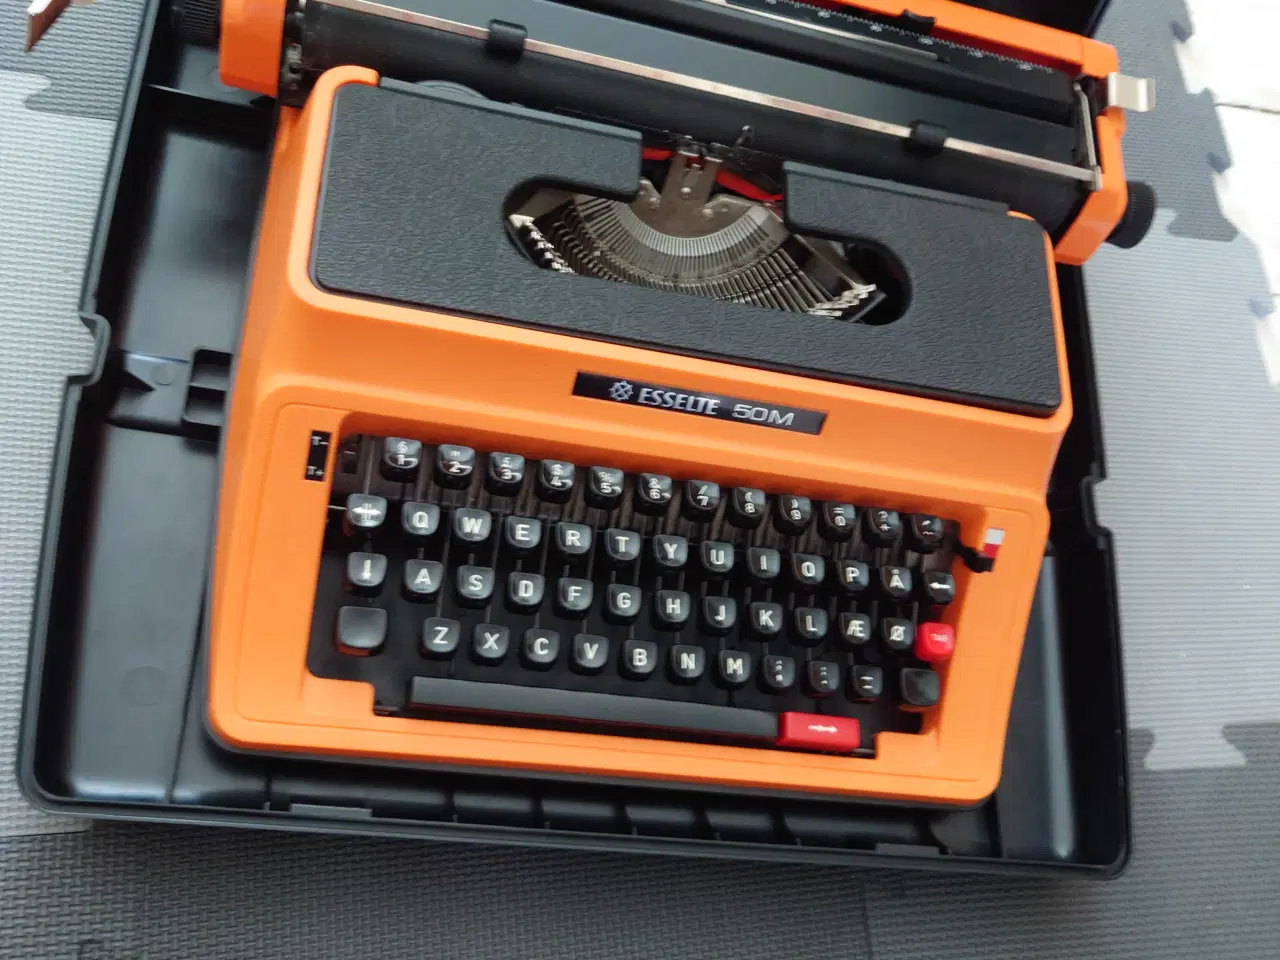 Billede 3 - Esselte 50M skrivemaskine, orange 